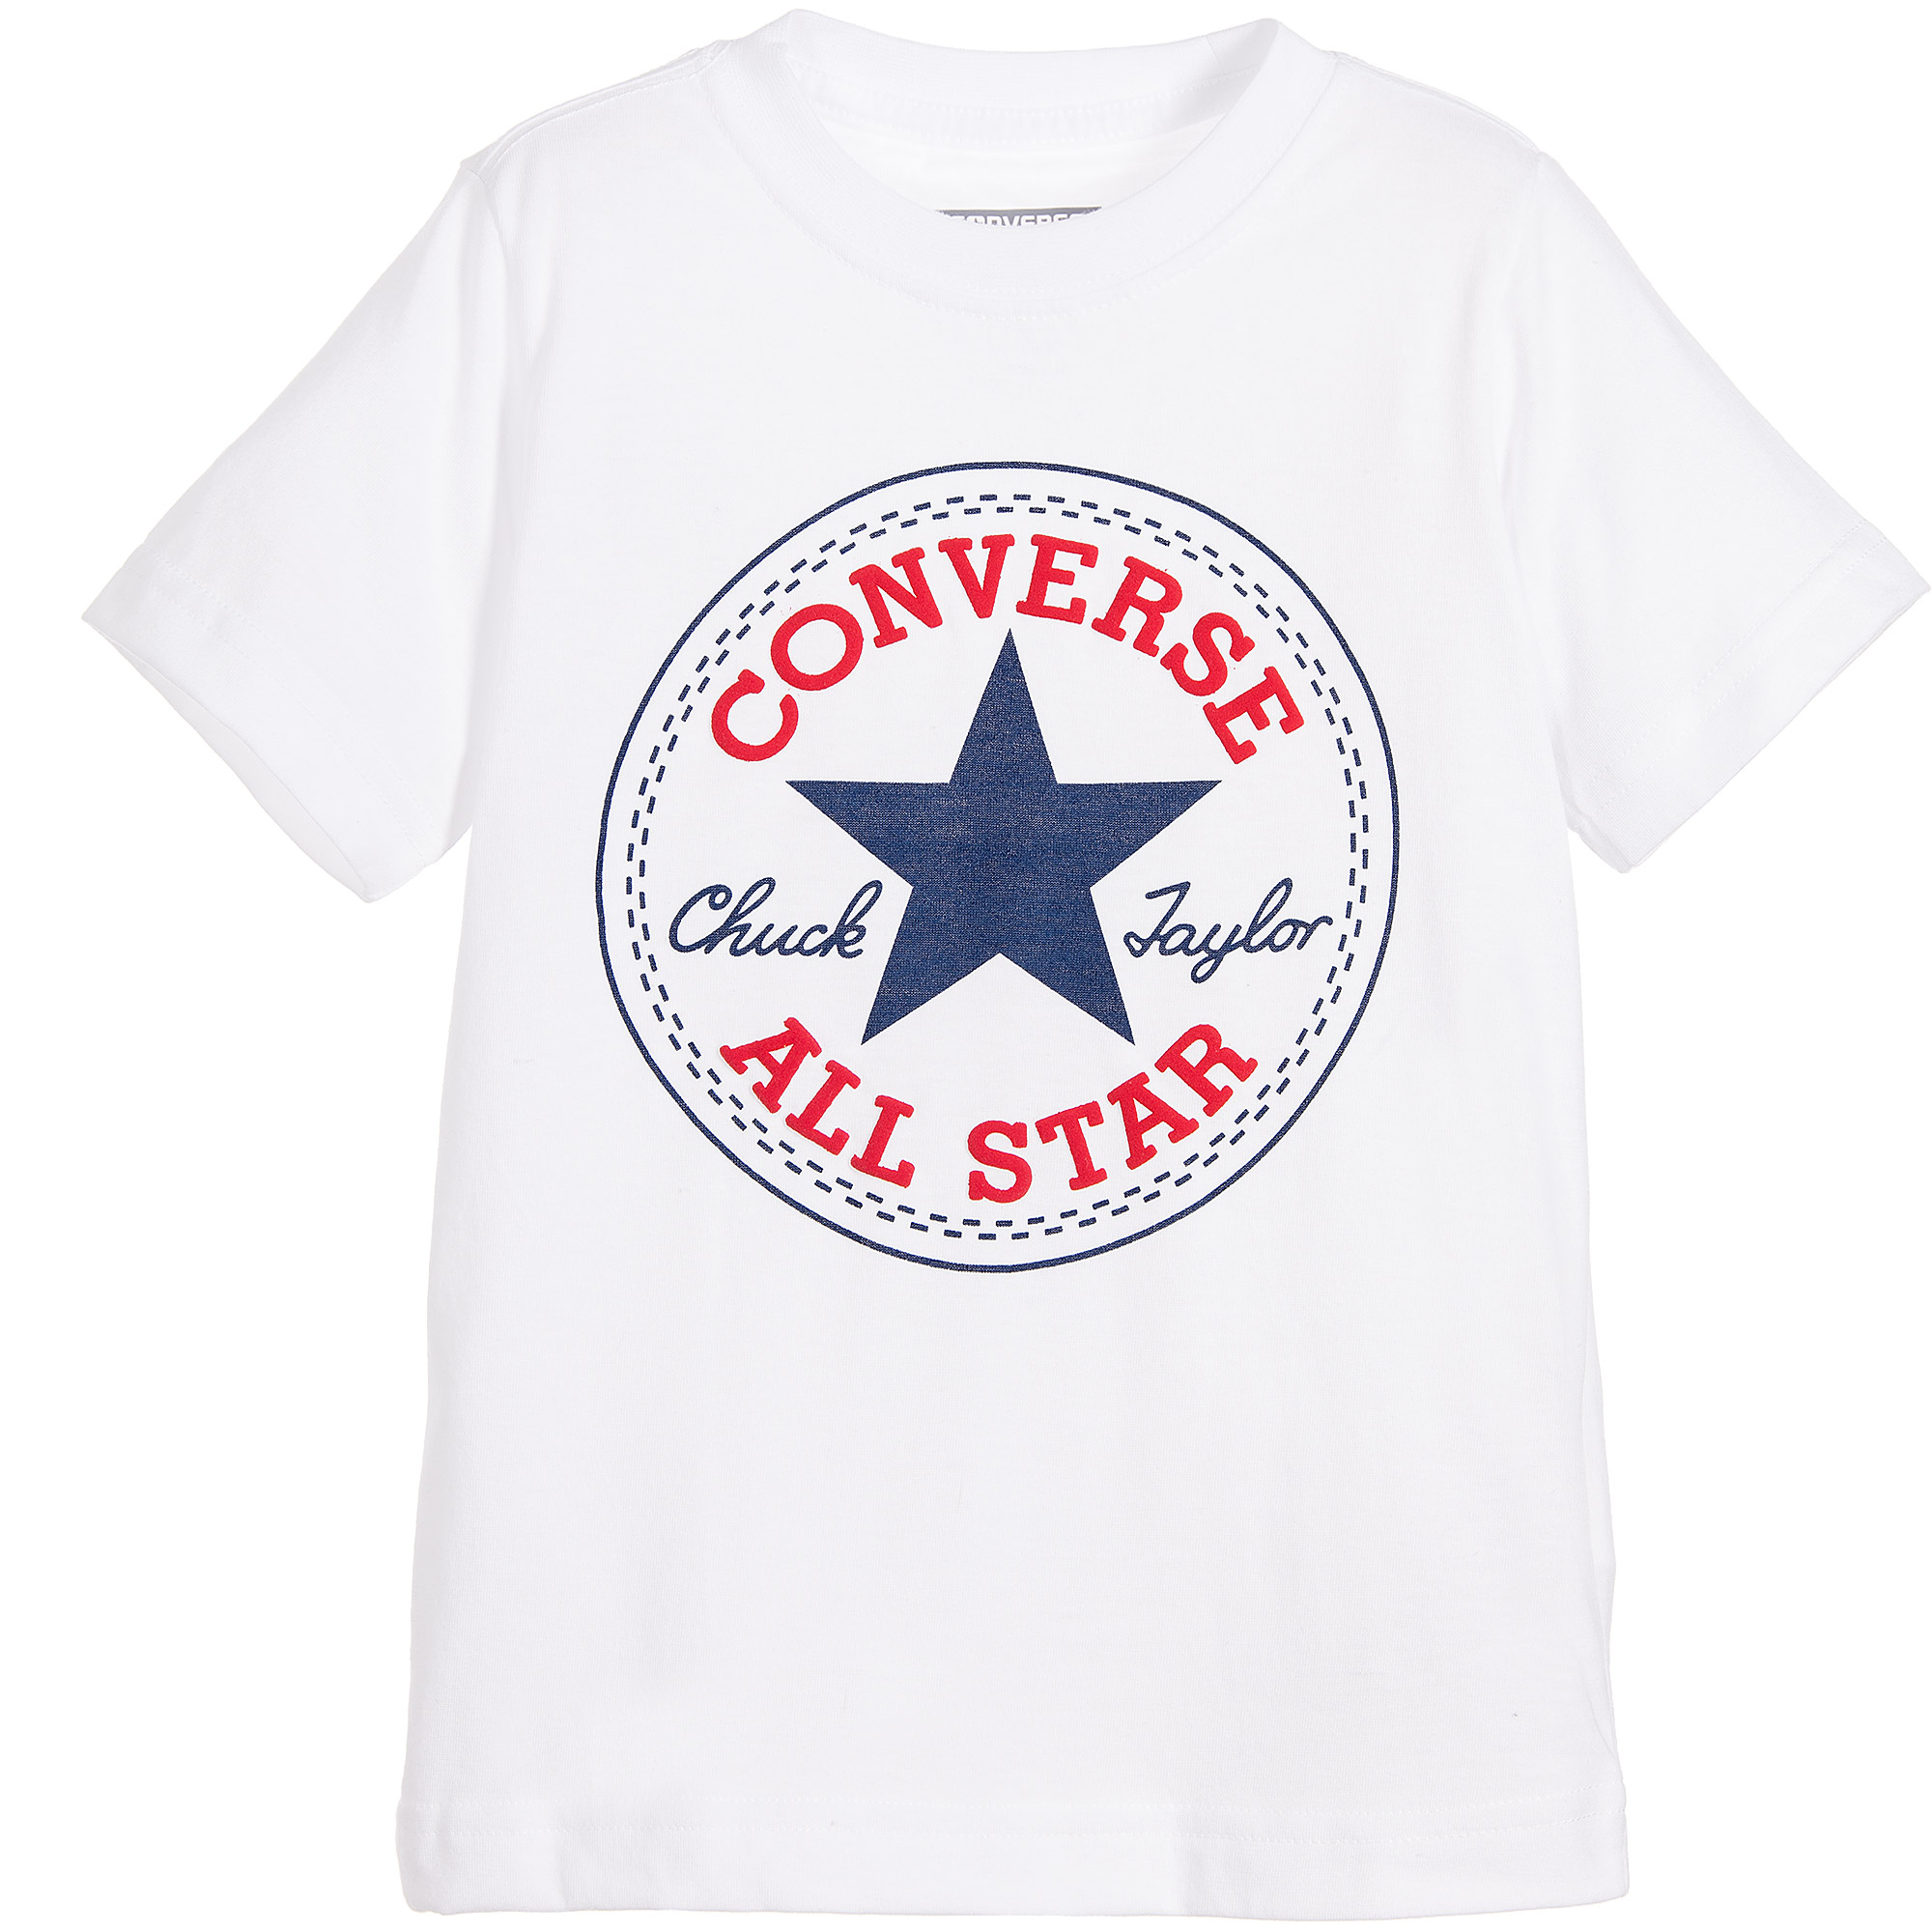 ليزر بيورير Converse White Cotton T-Shirt with All Star Logo ليزر بيورير